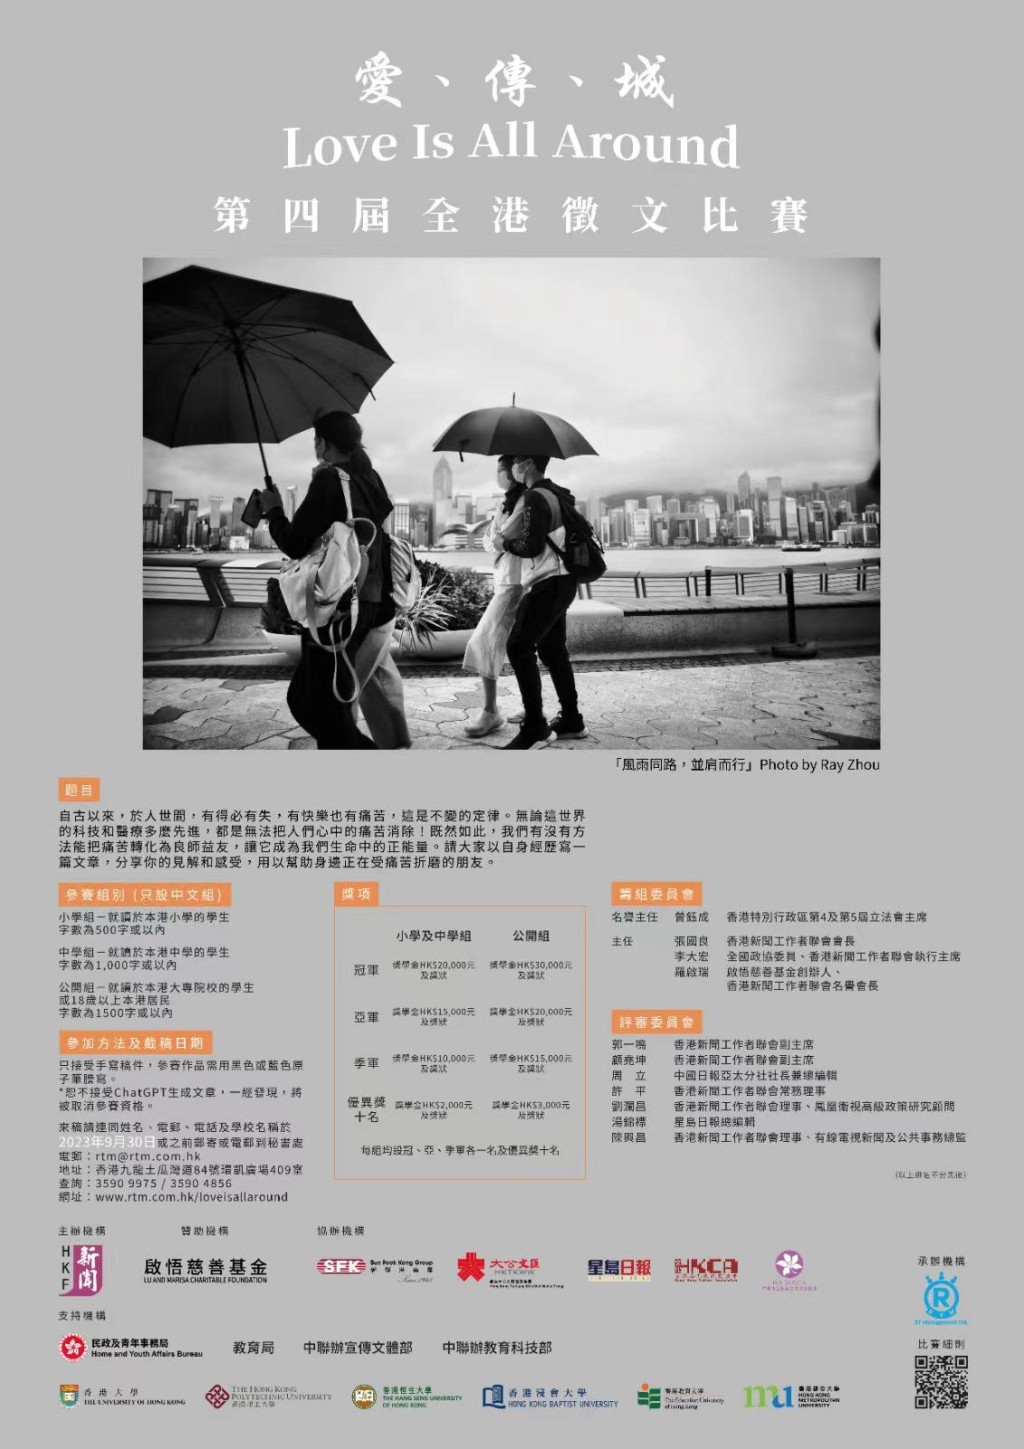 香港新聞工作者聯會主辦的「愛、傳、城 Love Is All Around」第四屆全港徵文比賽。